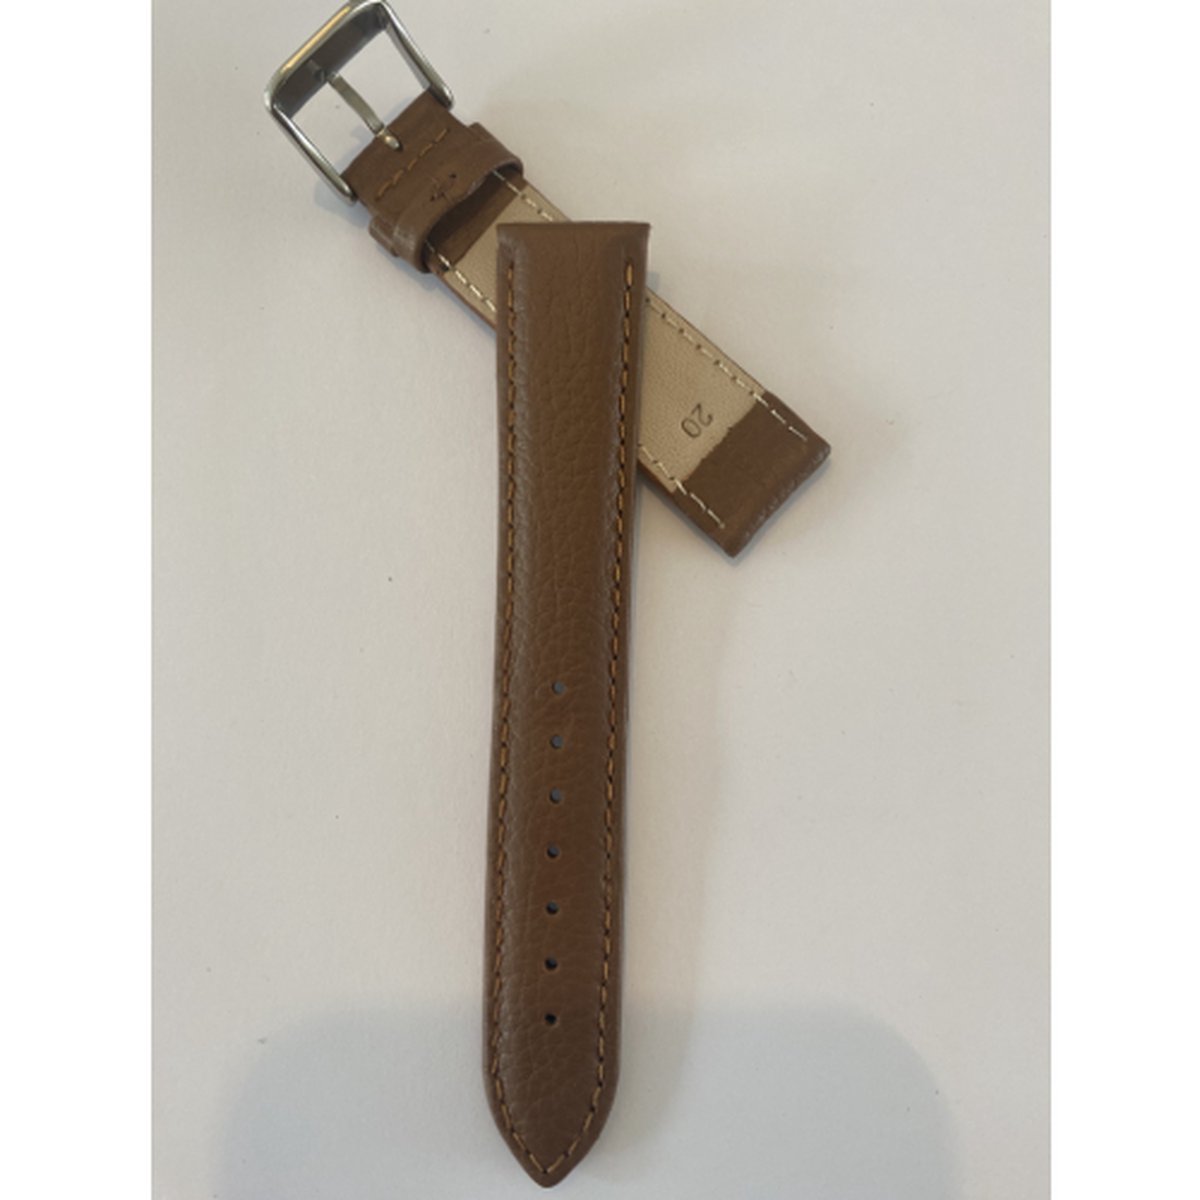 Horlogeband-model F 1-dames-heren-20 mm breed-lichtbruin-cognac kleurig-leder-juweliers kwaliteit-anti allergisch